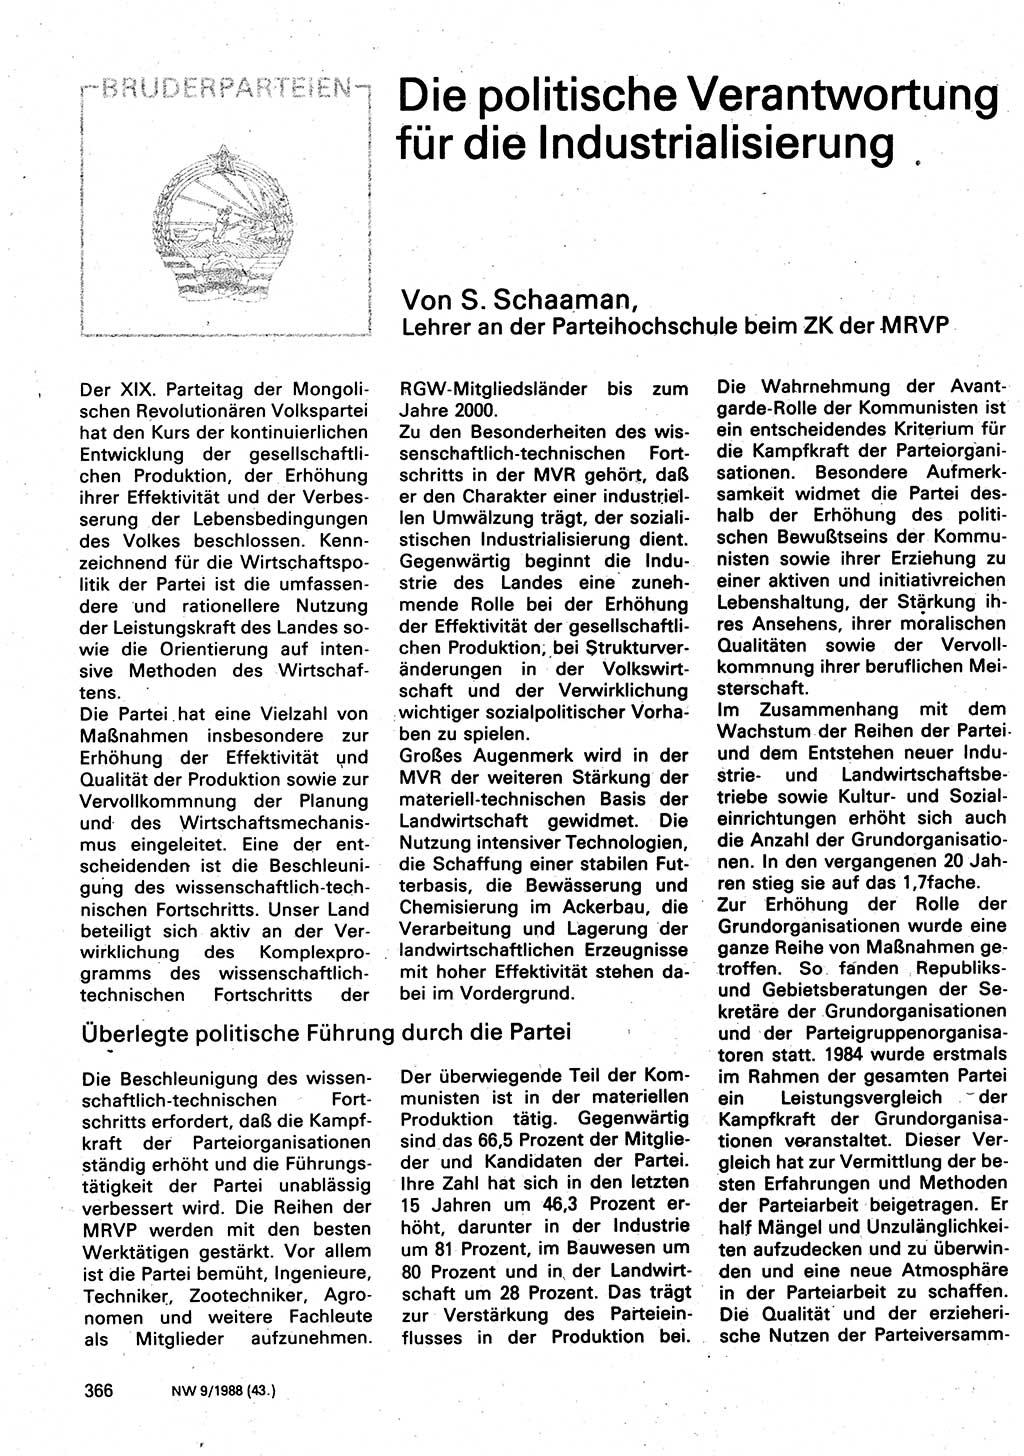 Neuer Weg (NW), Organ des Zentralkomitees (ZK) der SED (Sozialistische Einheitspartei Deutschlands) für Fragen des Parteilebens, 43. Jahrgang [Deutsche Demokratische Republik (DDR)] 1988, Seite 366 (NW ZK SED DDR 1988, S. 366)